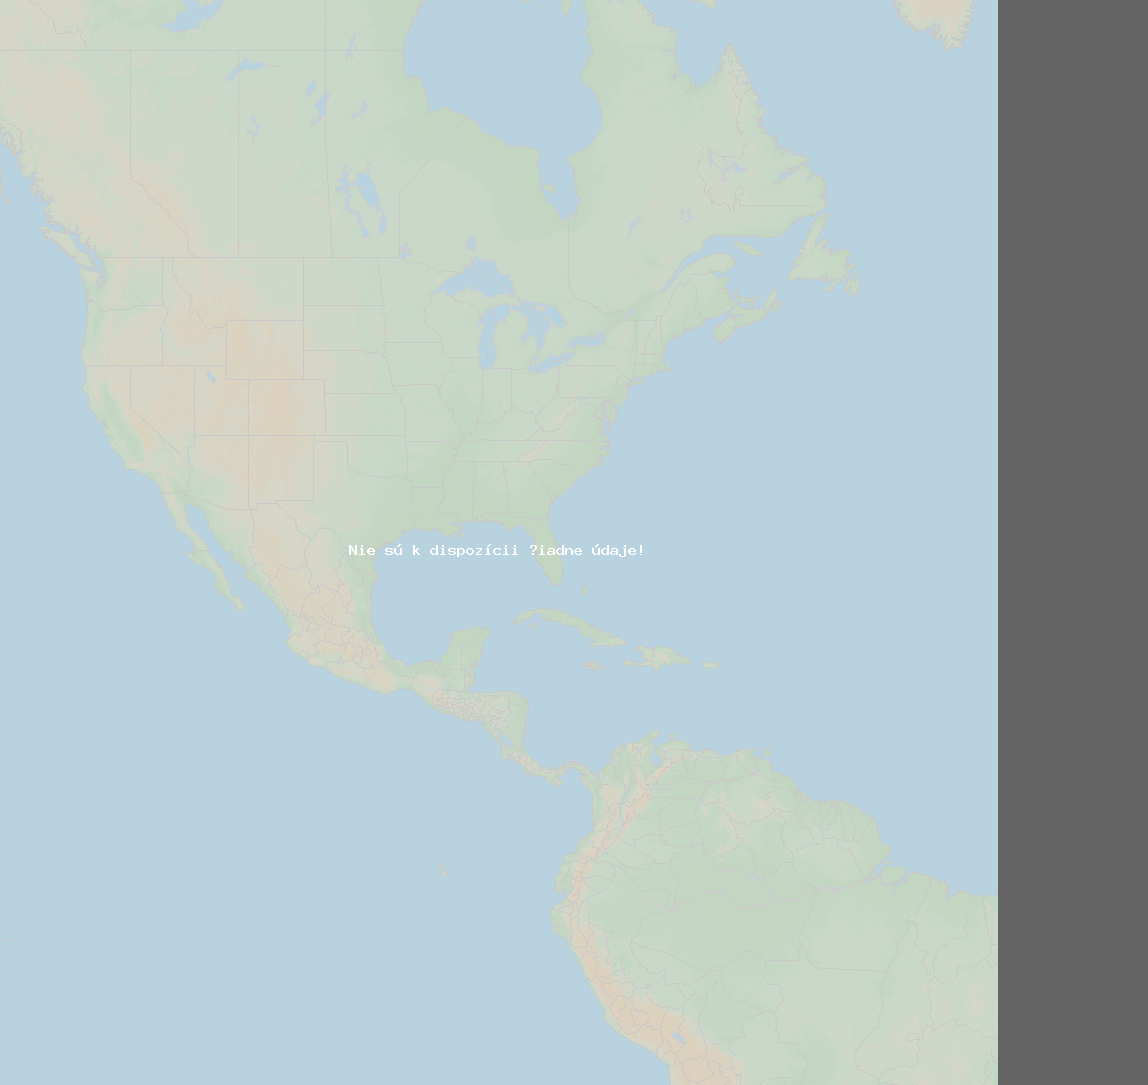 Pomer bleskov (Stanica Lawrence-Dade2) North America 2019 Jún